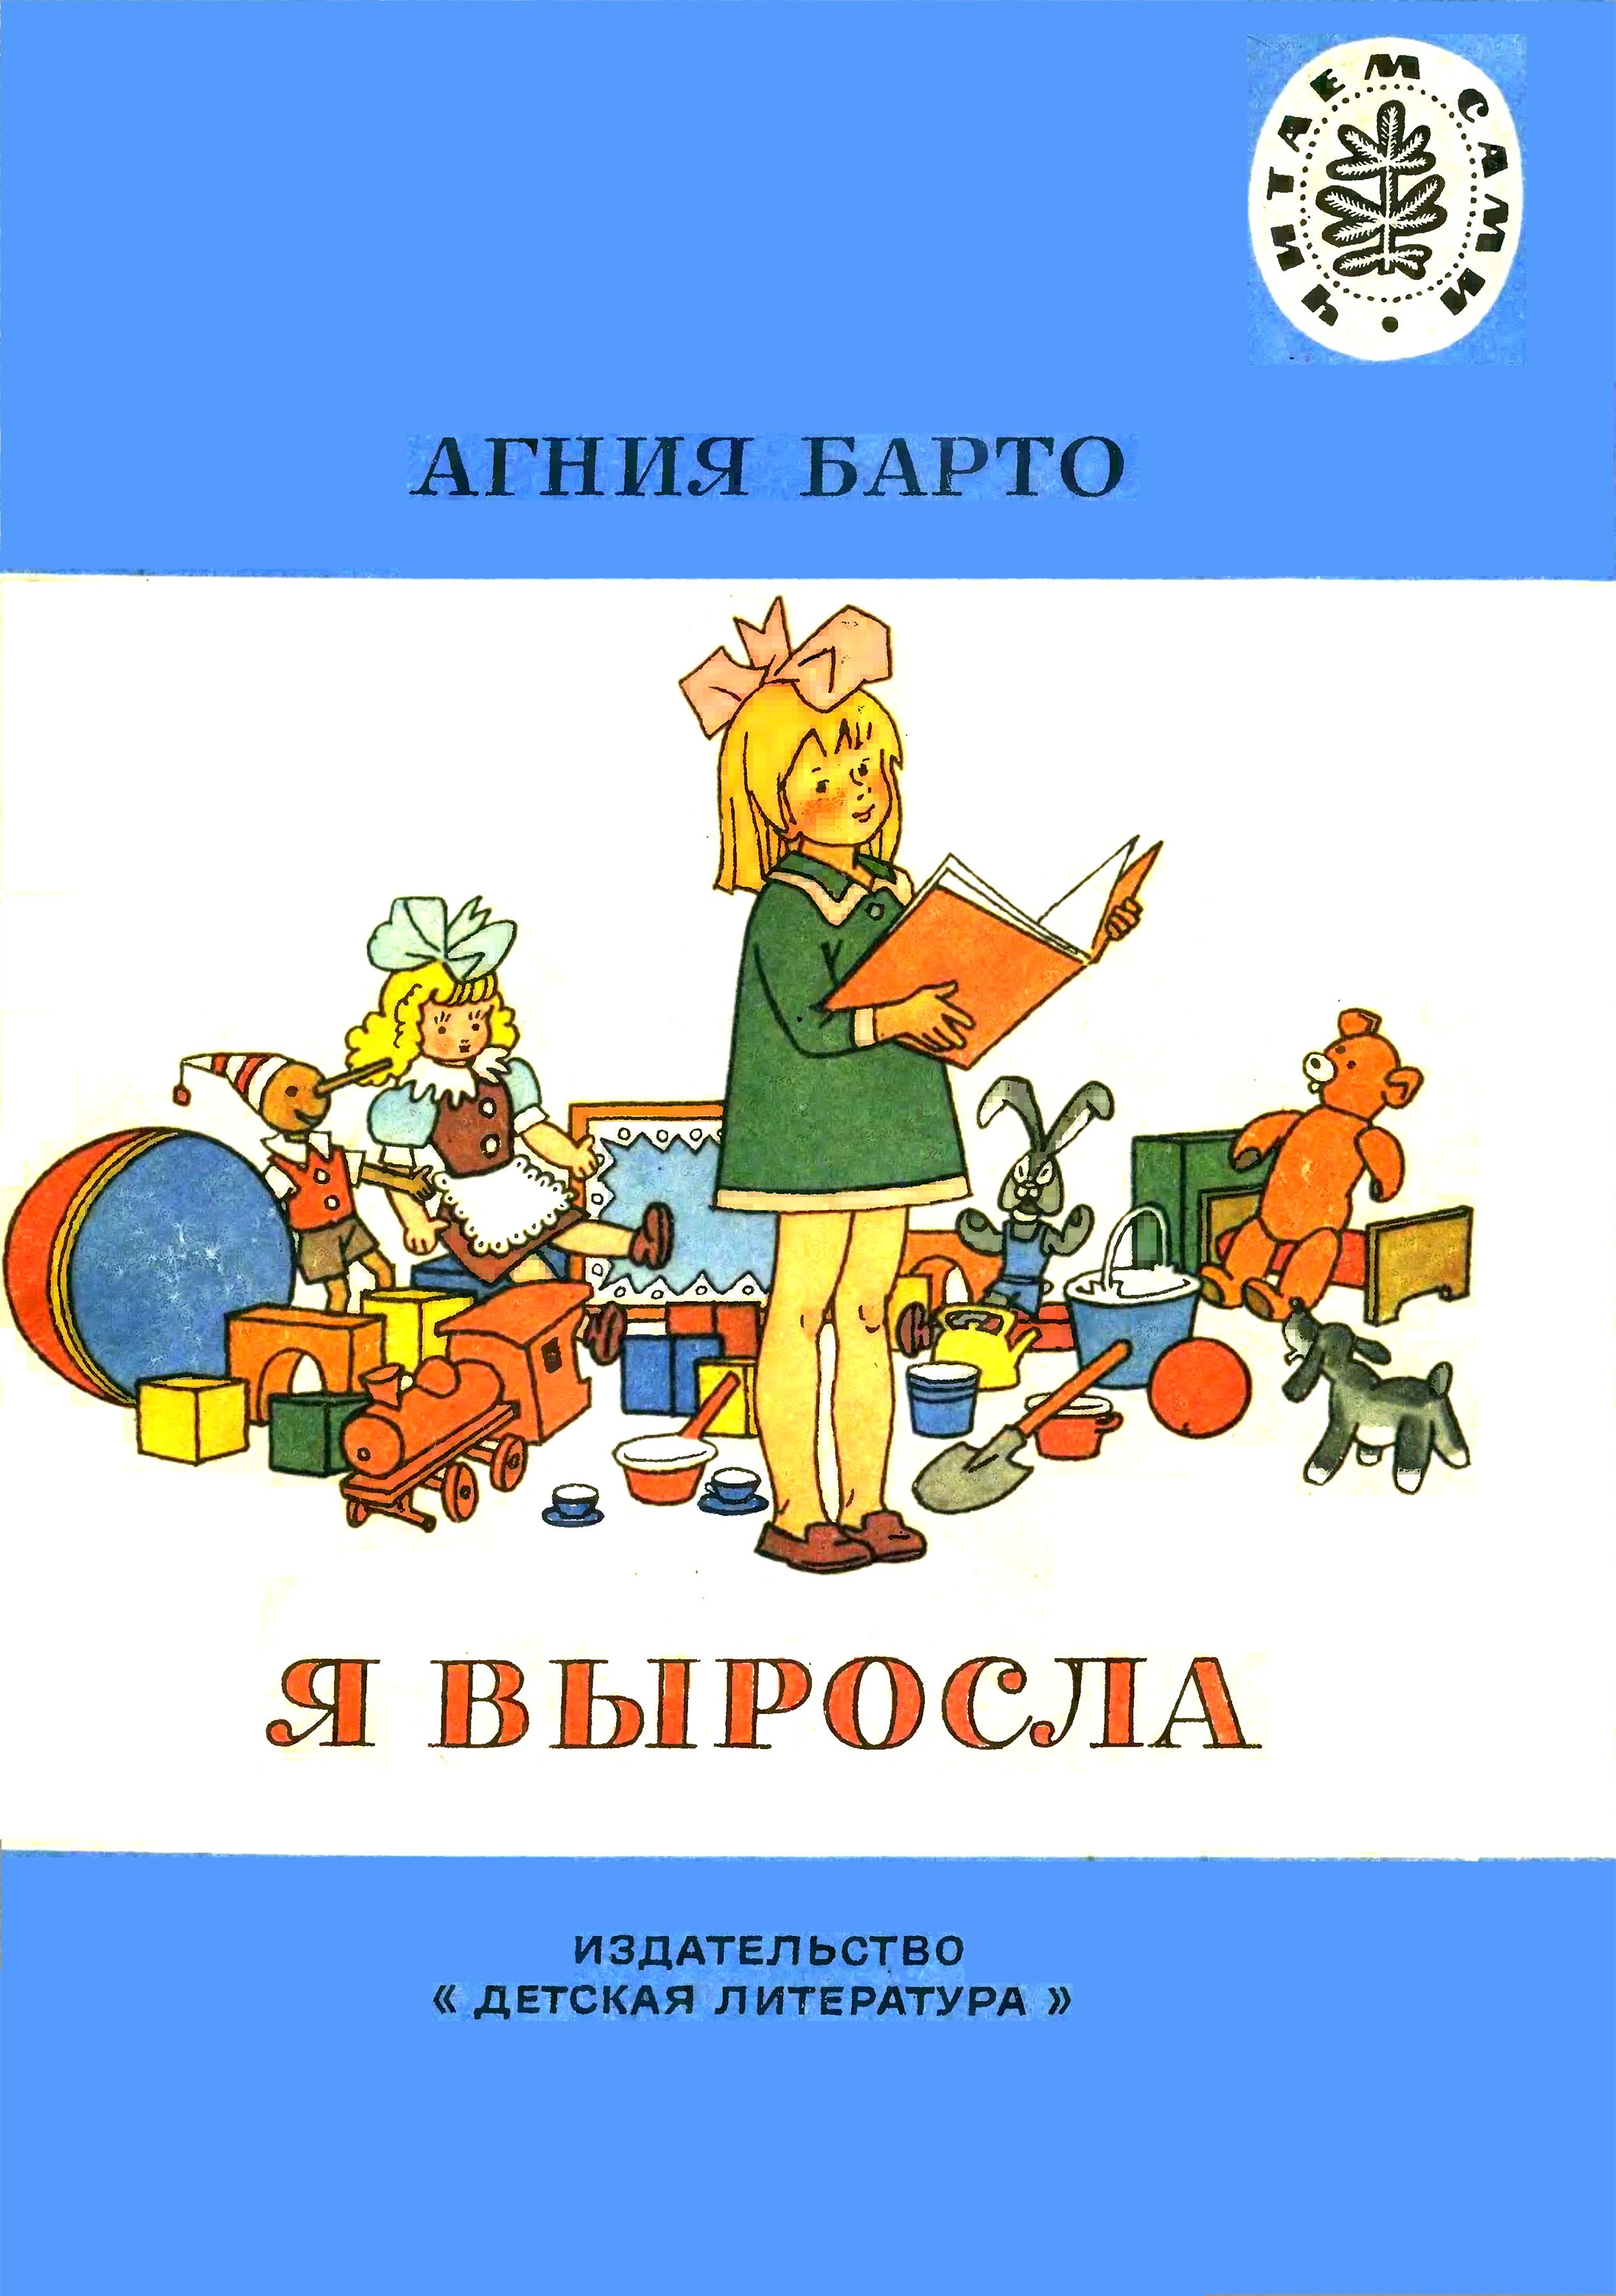 А. Барто "Я выросла". Рисунки К. Валька. Москва, "Детская литература". 1983 год